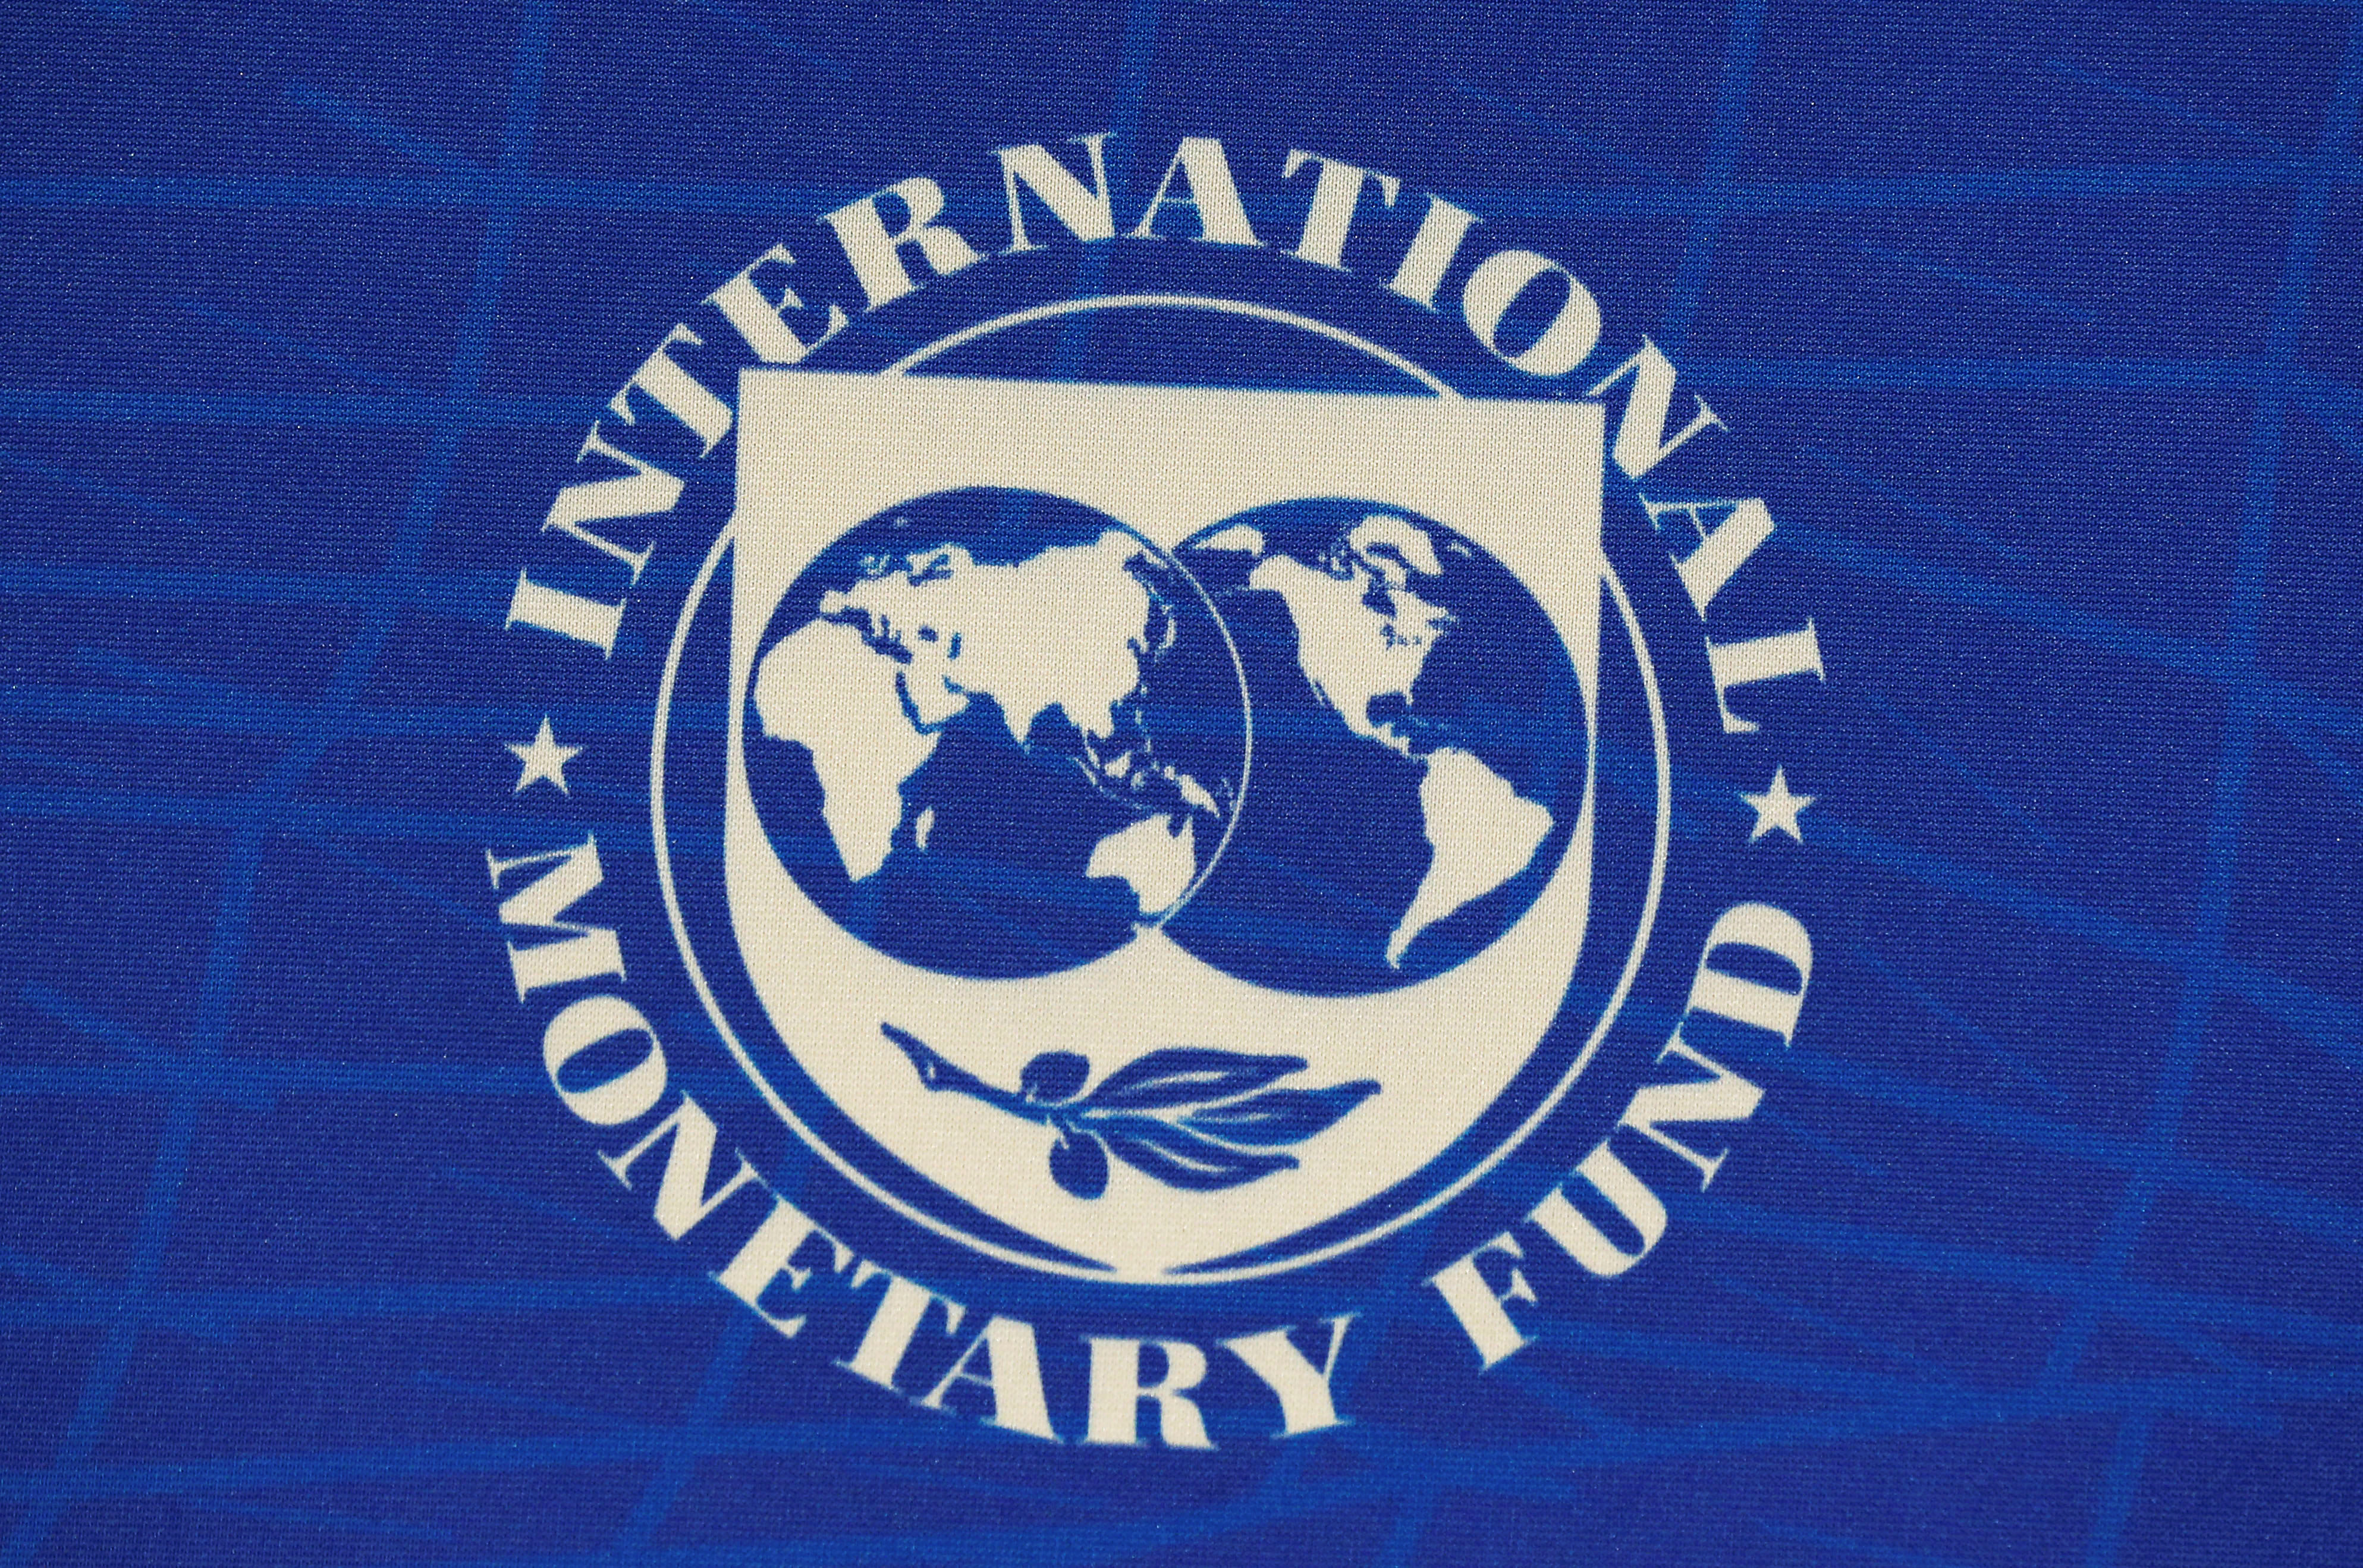 Κοροναϊός: Ανησυχητικές προβλέψεις από το ΔΝΤ! “Χτύπημα” στην παγκόσμια οικονομία